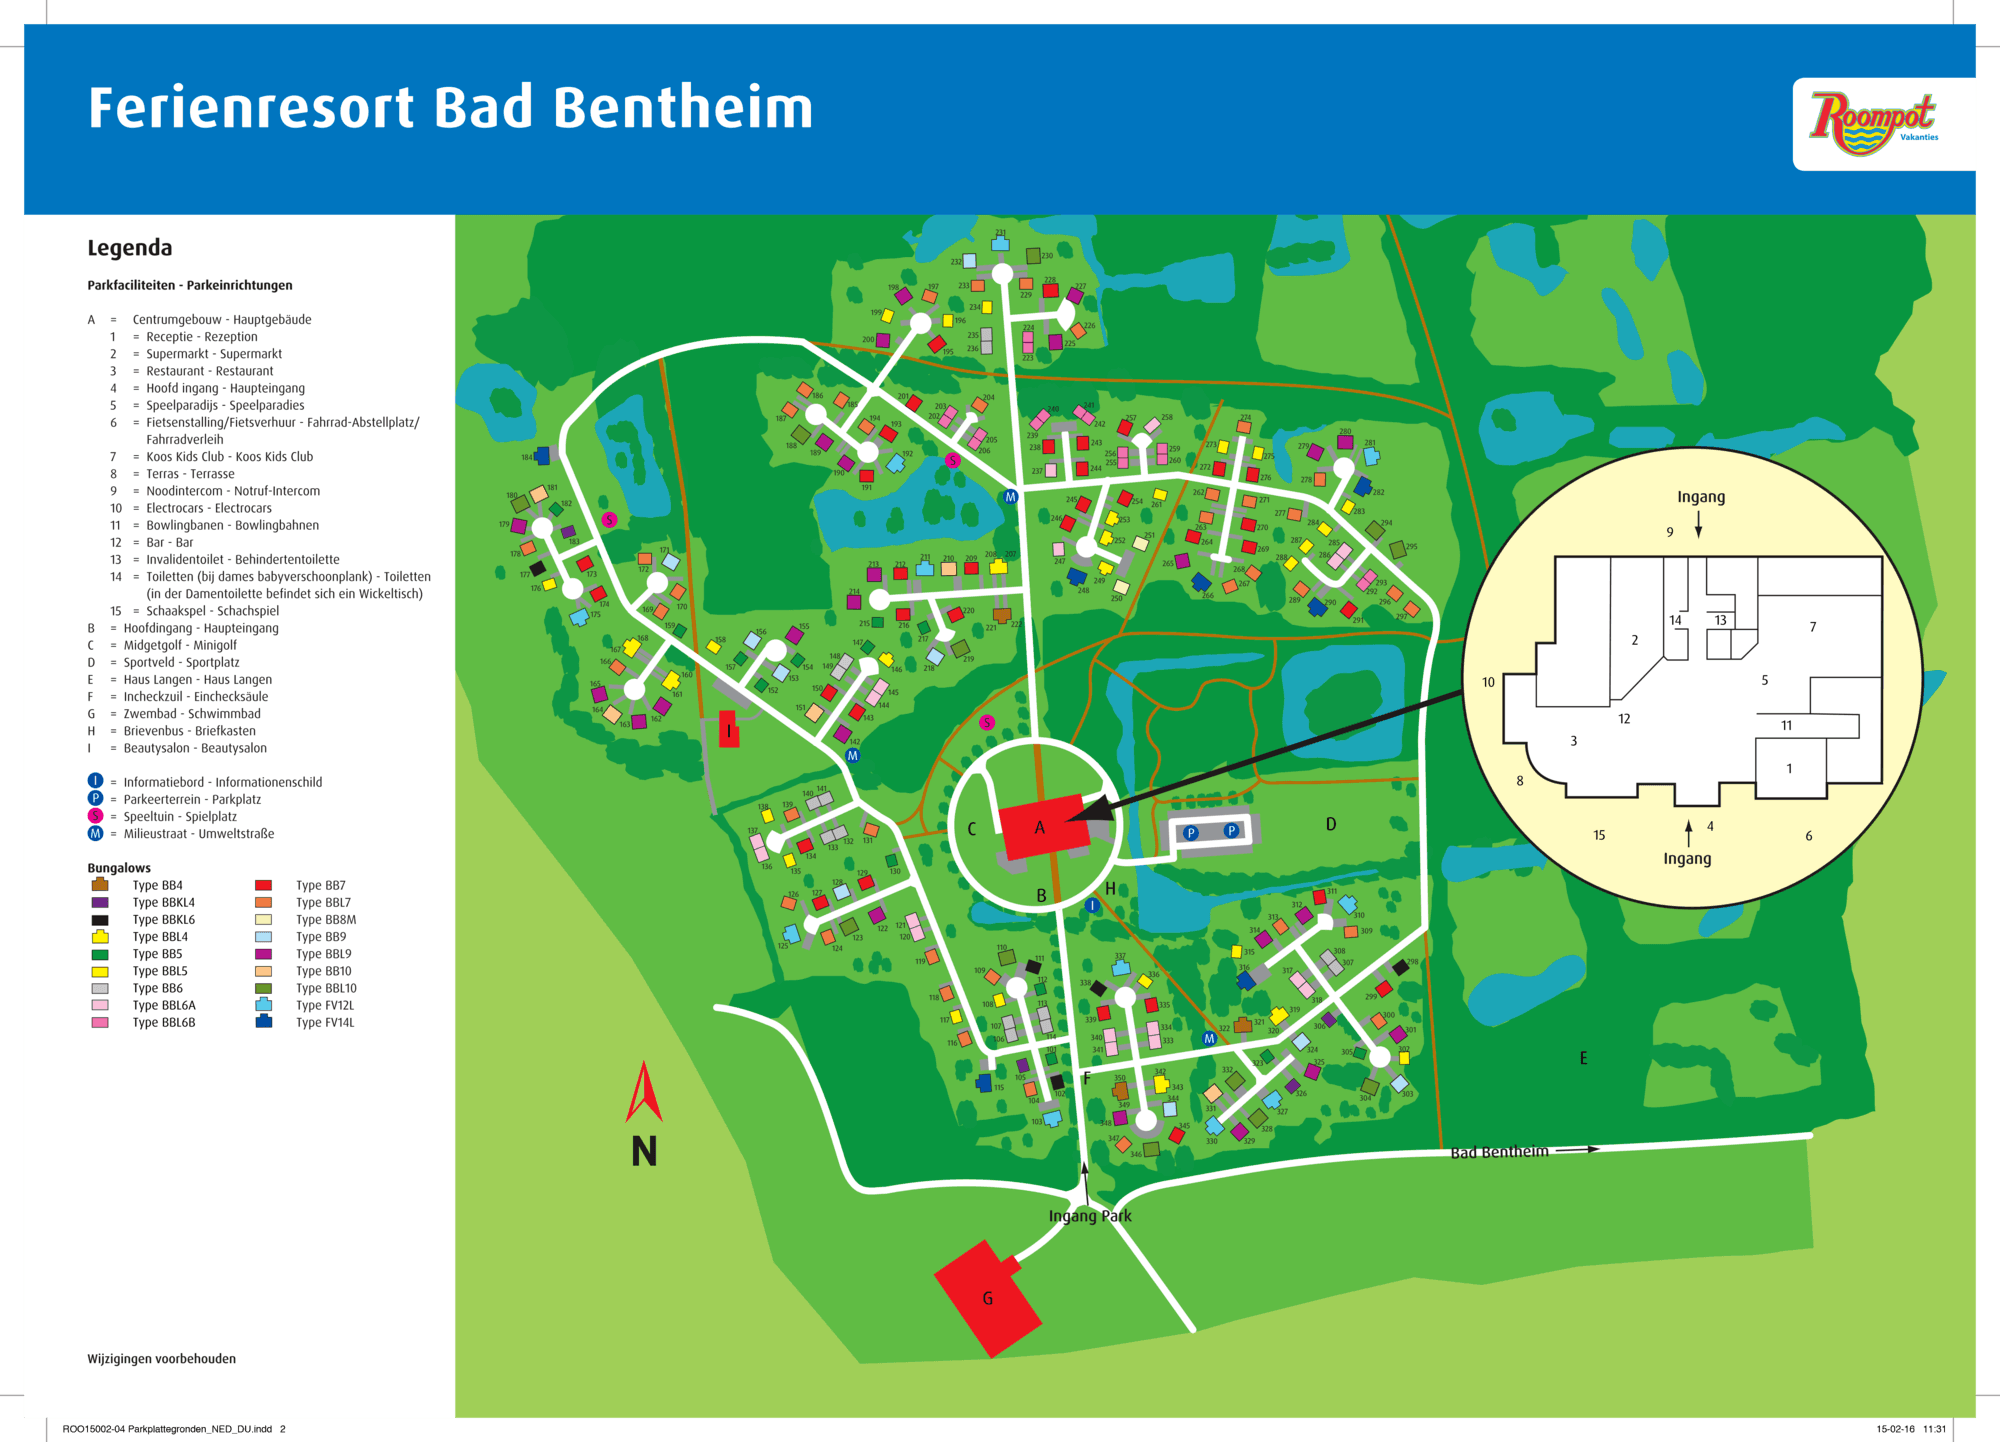 Plattegrond van Ferienresort Bad Bentheim in Duitsland